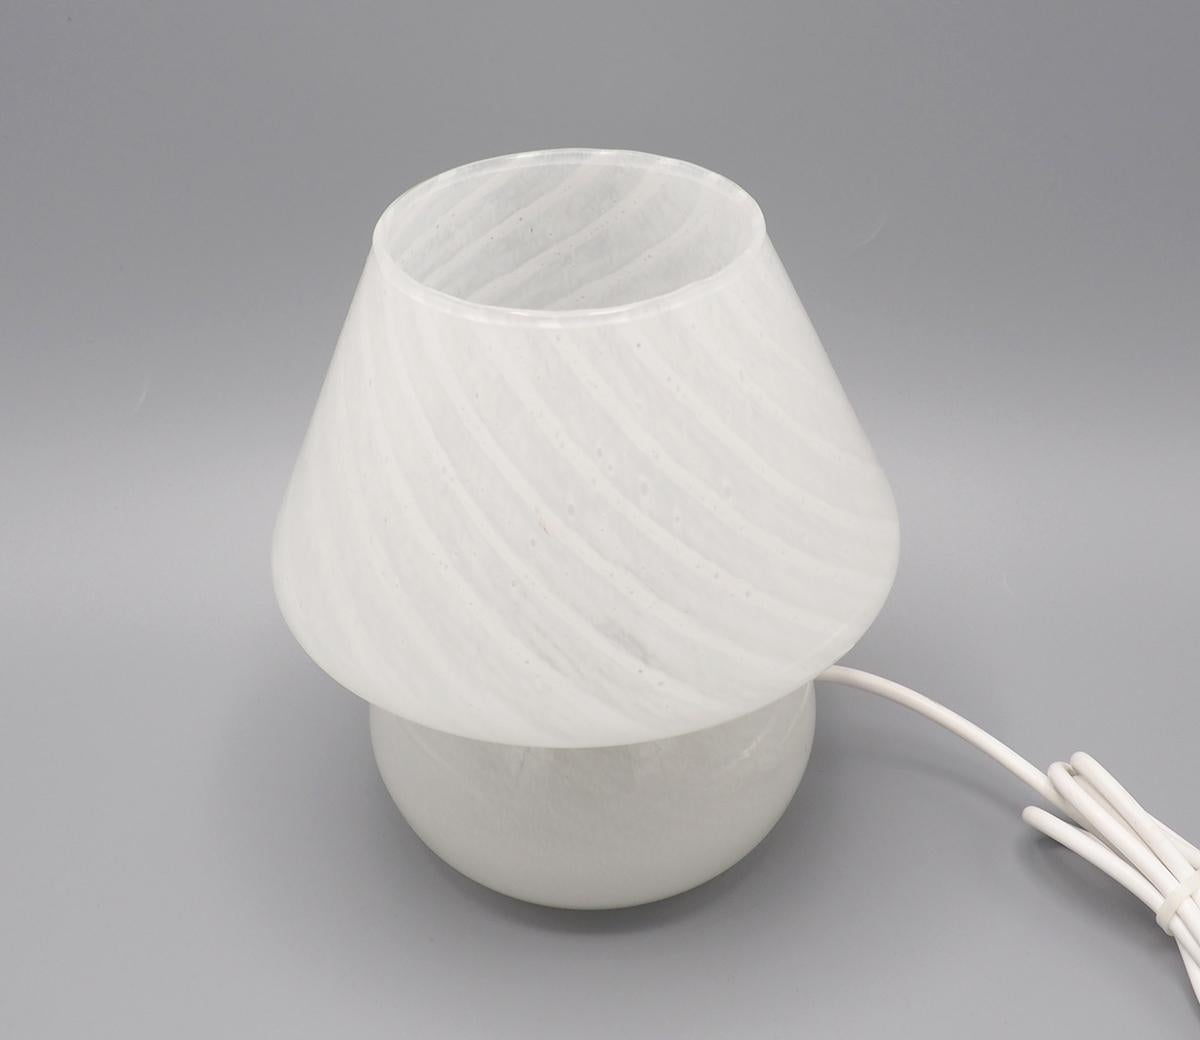 Belle lampe de table en verre soufflé à la bouche en verre de Murano des années 1970.

attribuée à Gambaro e Poggi pour Vetri.

Le verre présente différentes nuances de verre gris tourbillonnant, ce qui donne un effet agréable lorsque la lampe